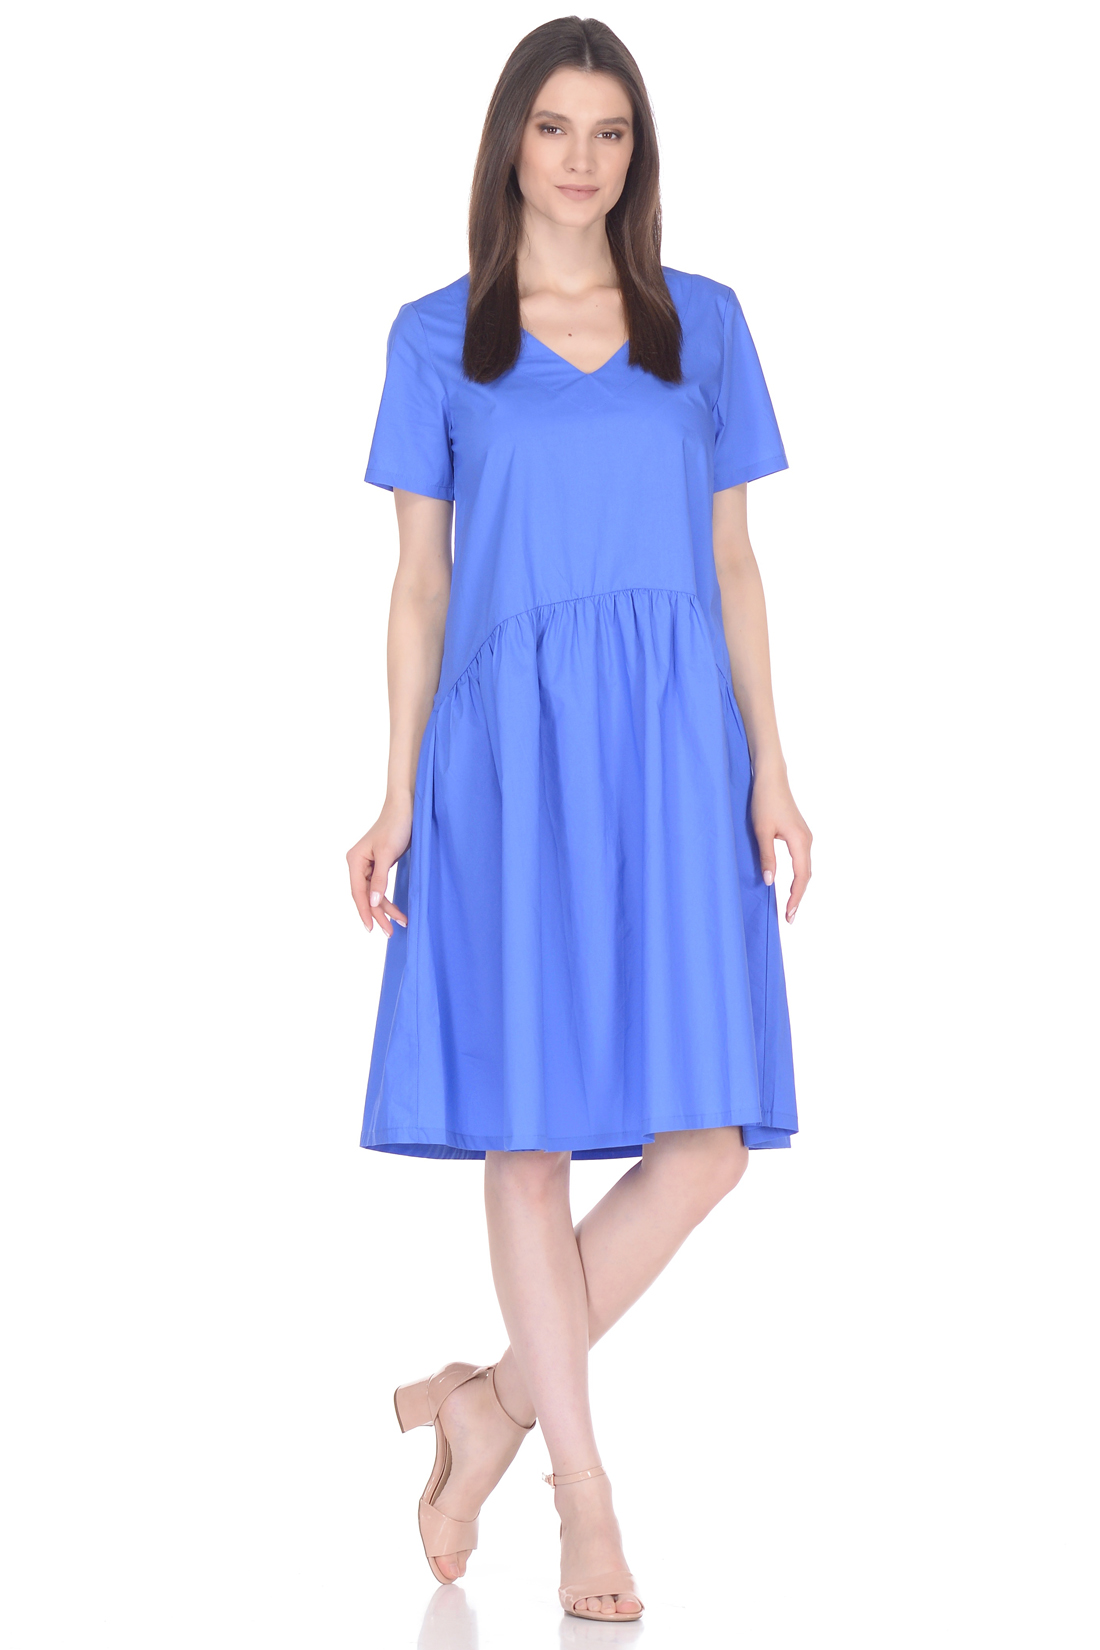 Свободное платье из хлопка (арт. baon B458061), размер XL, цвет синий Свободное платье из хлопка (арт. baon B458061) - фото 1